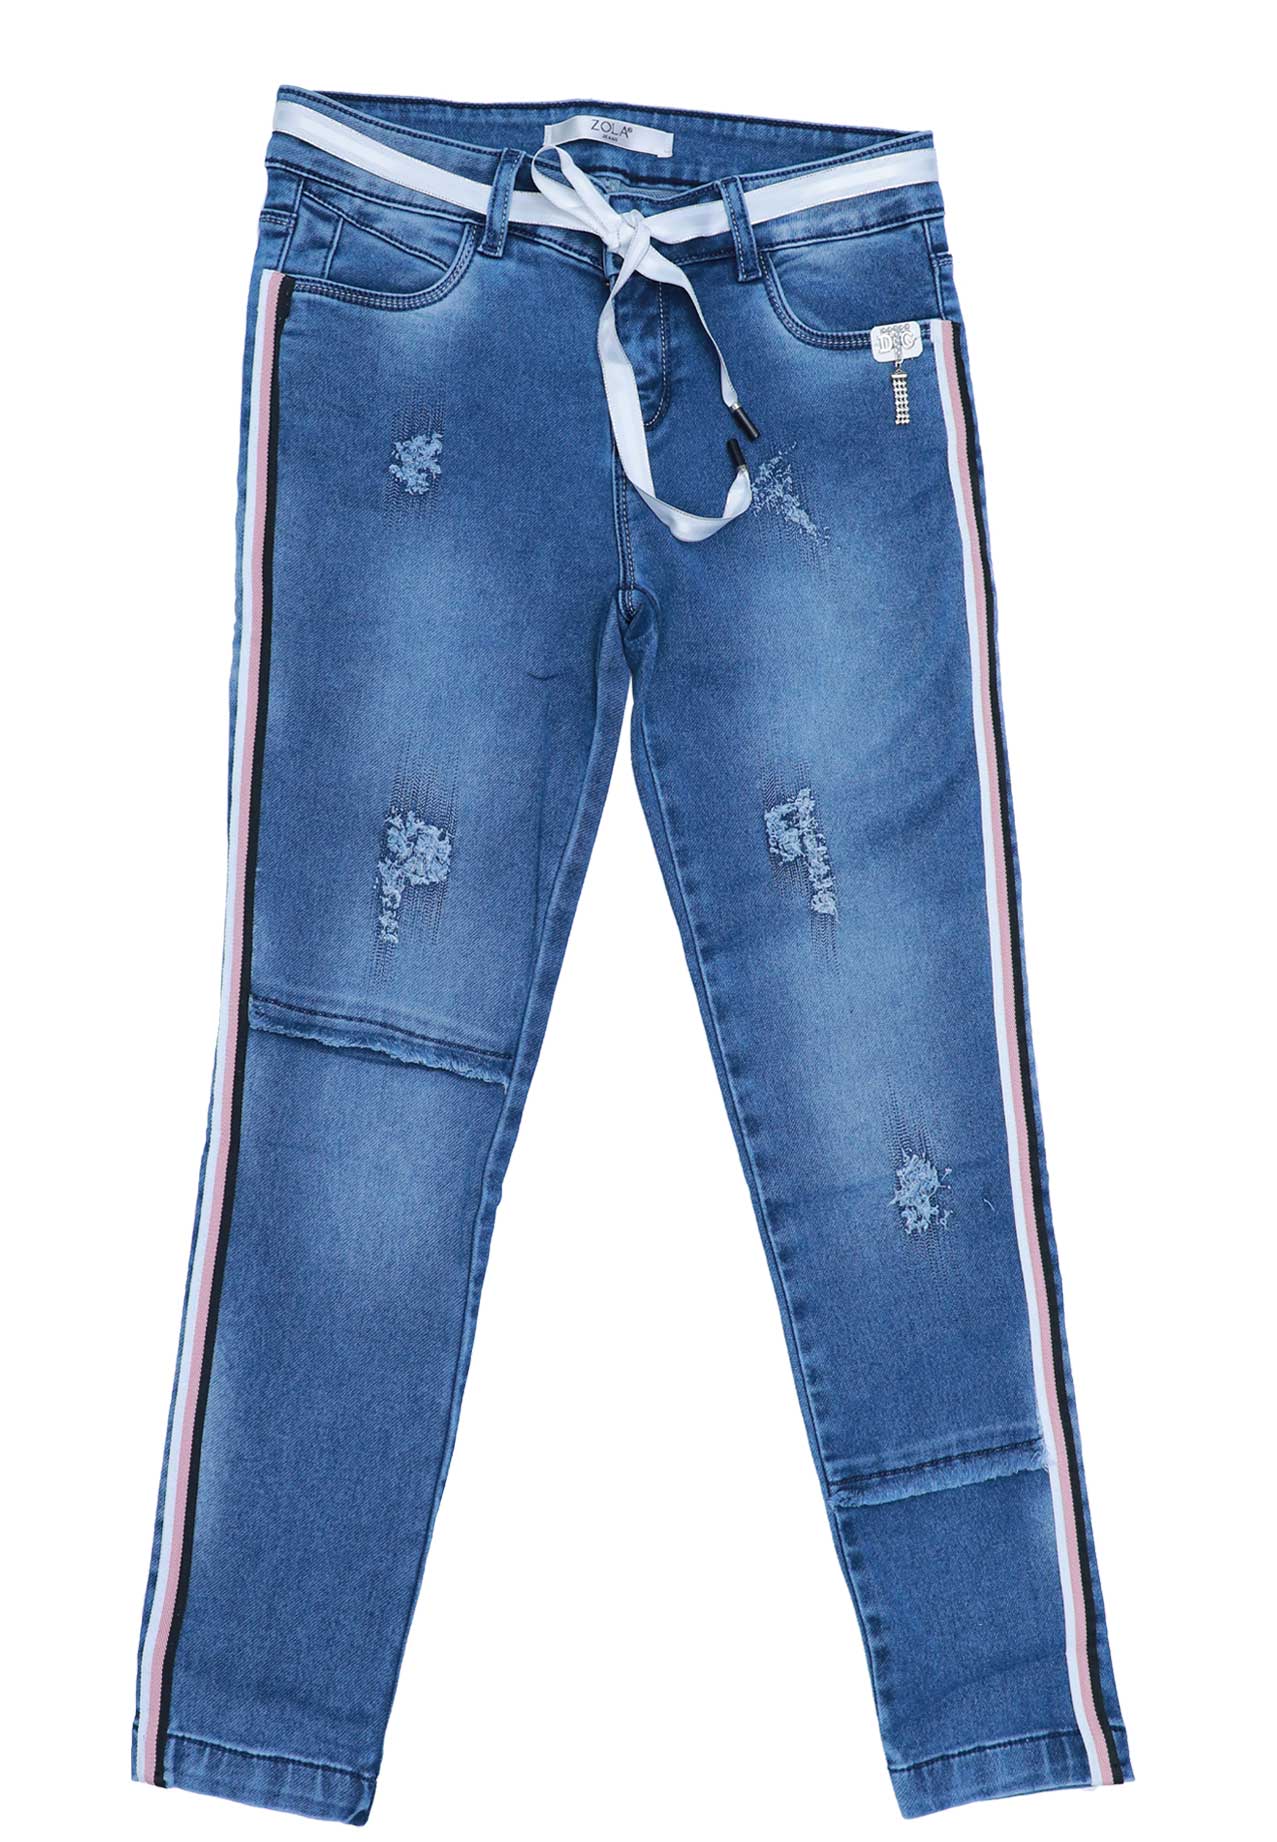 zola jeans online